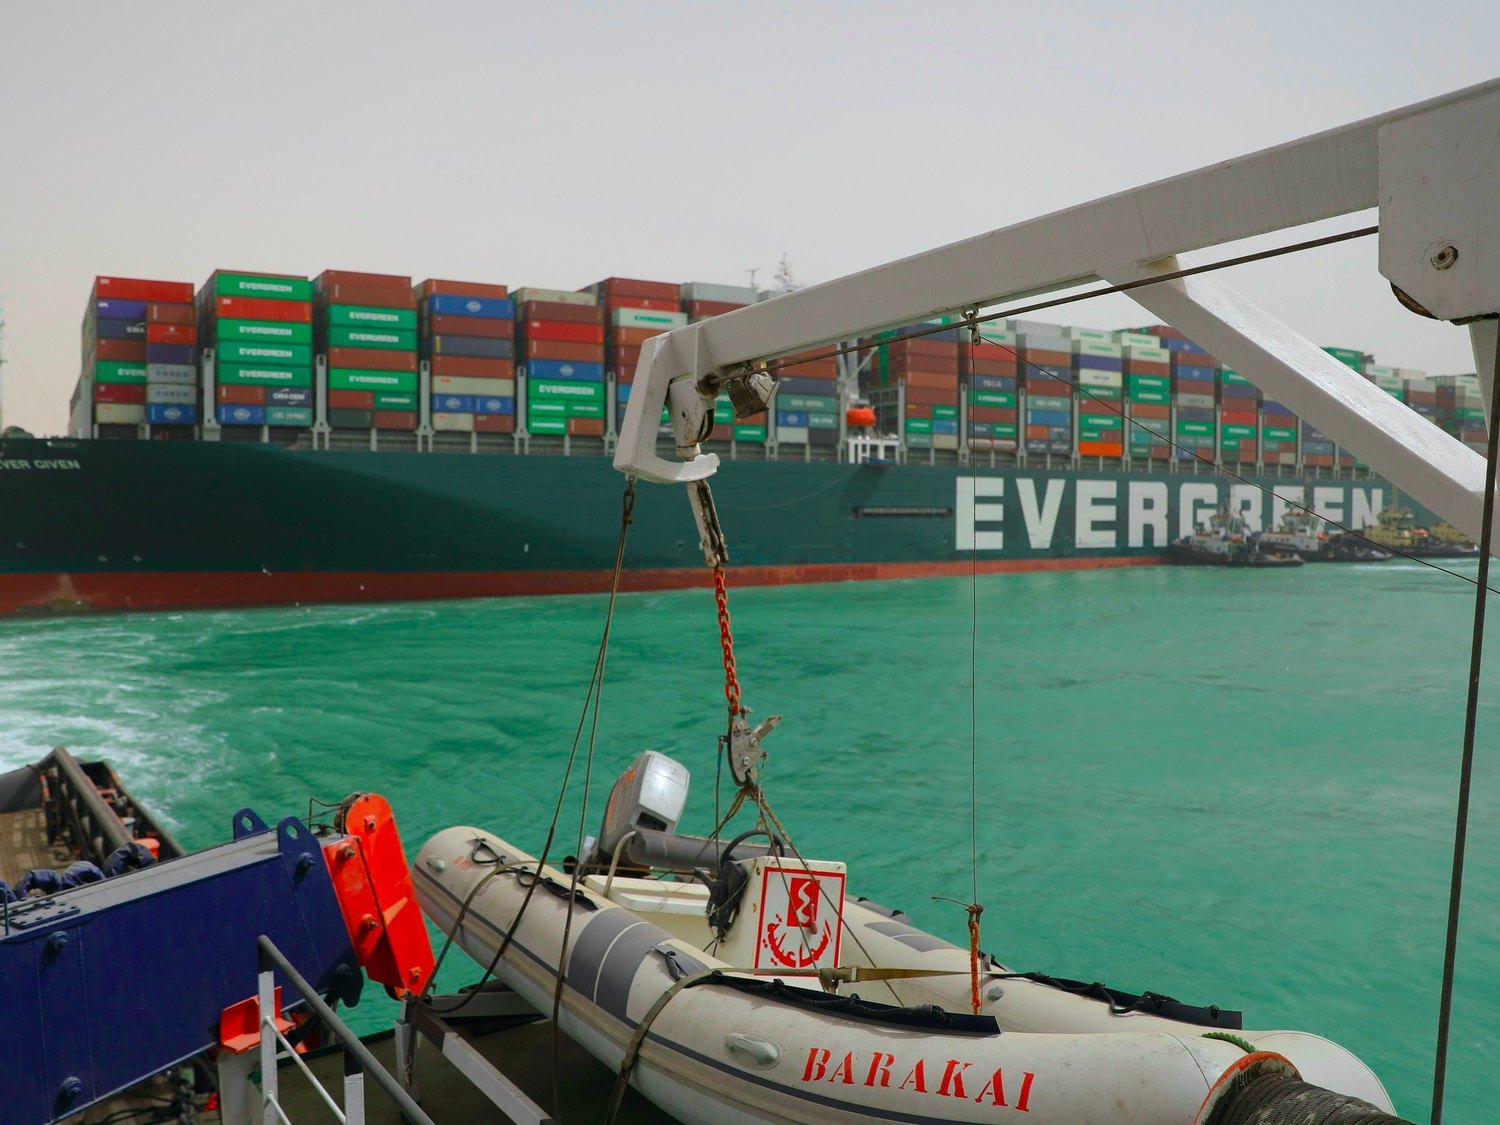 El canal de Suez sigue taponado por el Ever Given: ¿Qué supone para la economía mundial?